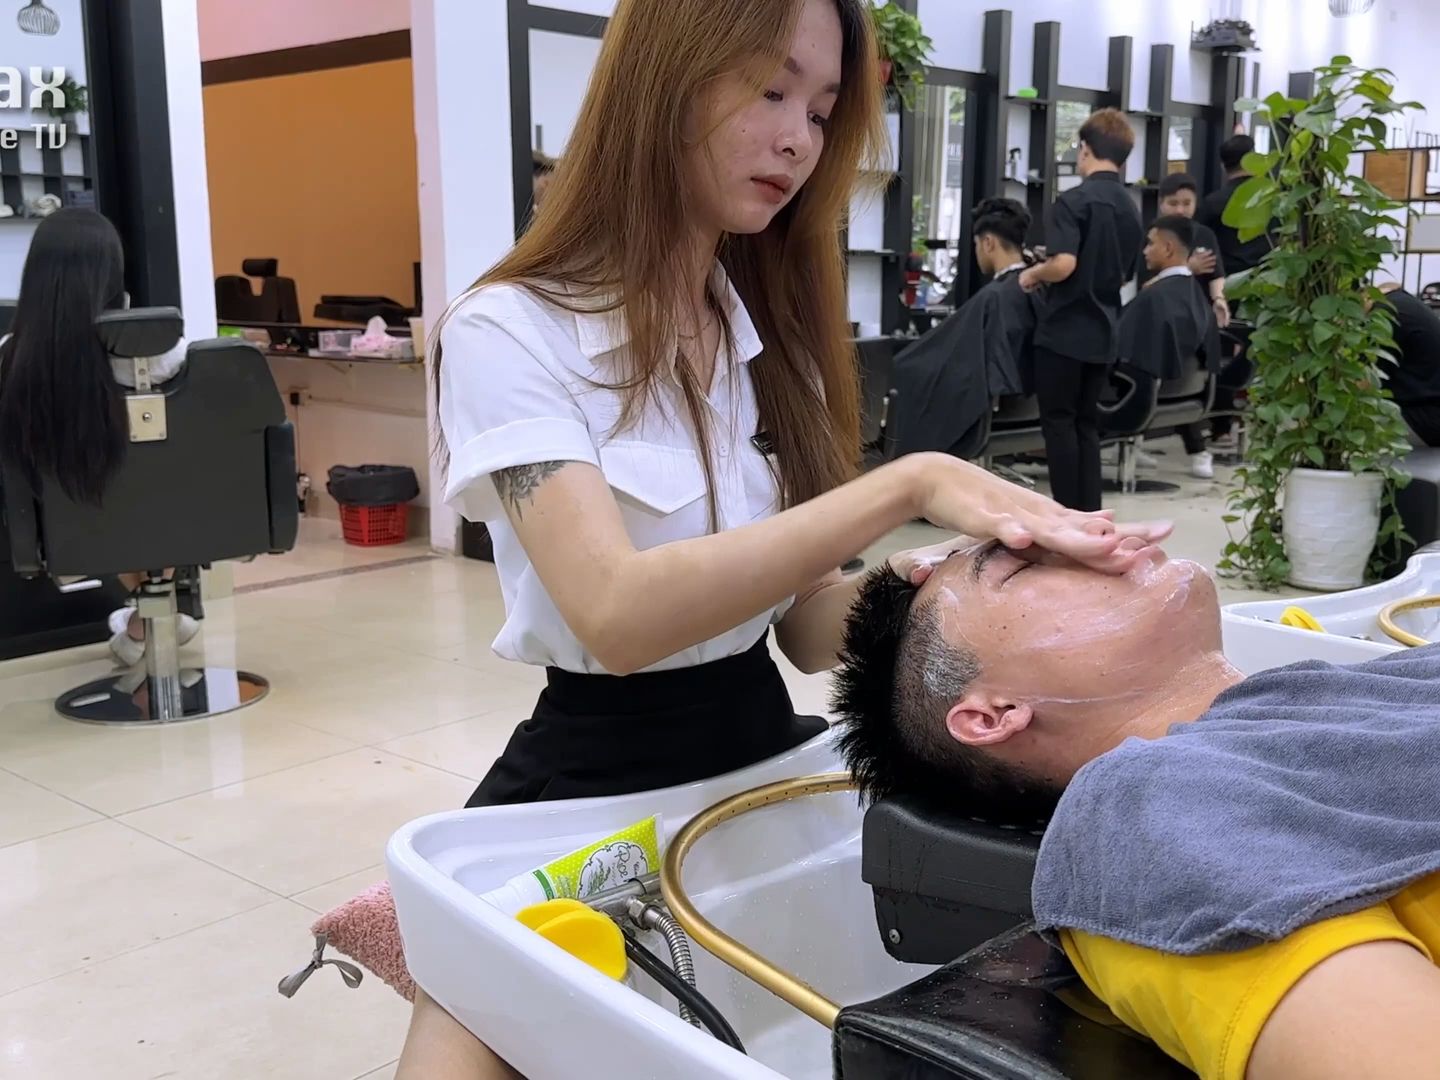 越南理发店美女图片